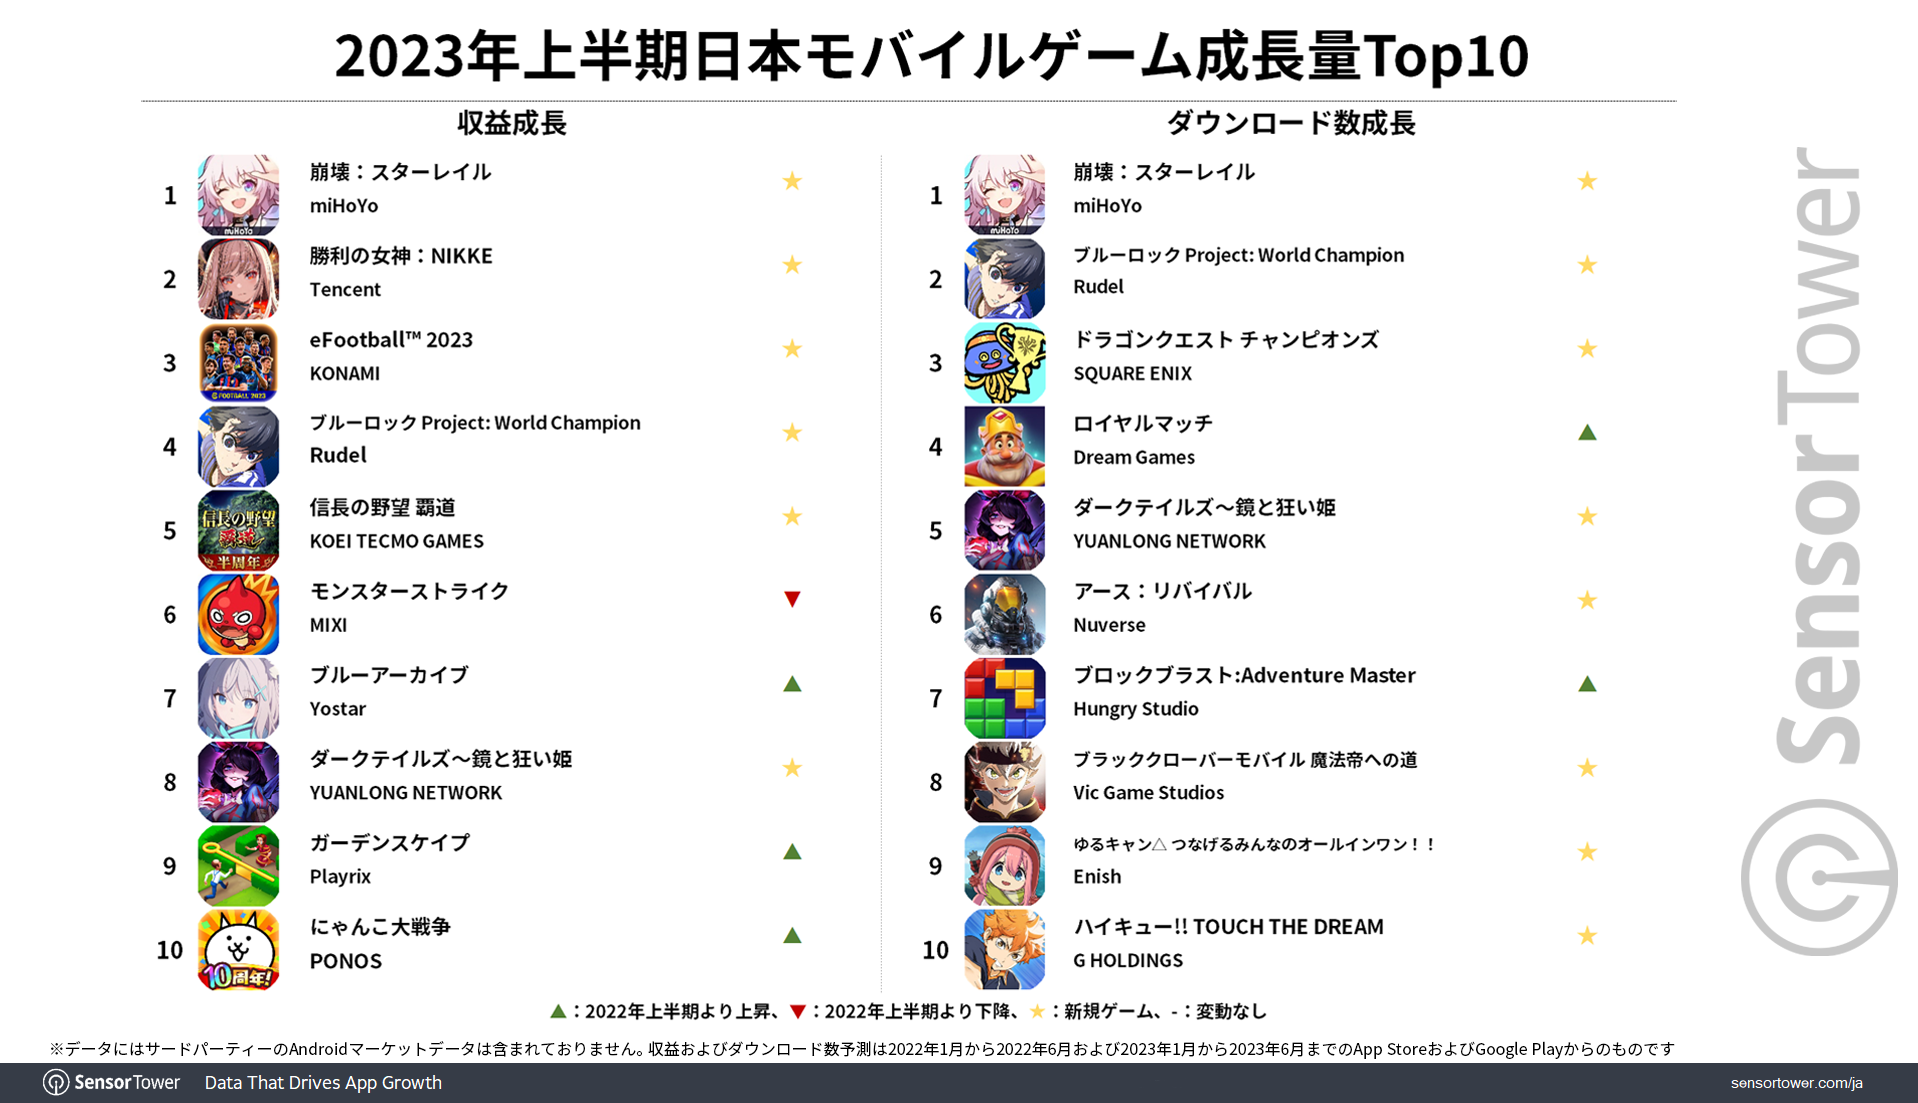 2023H1 Revenue DL Growth Top10-Japan